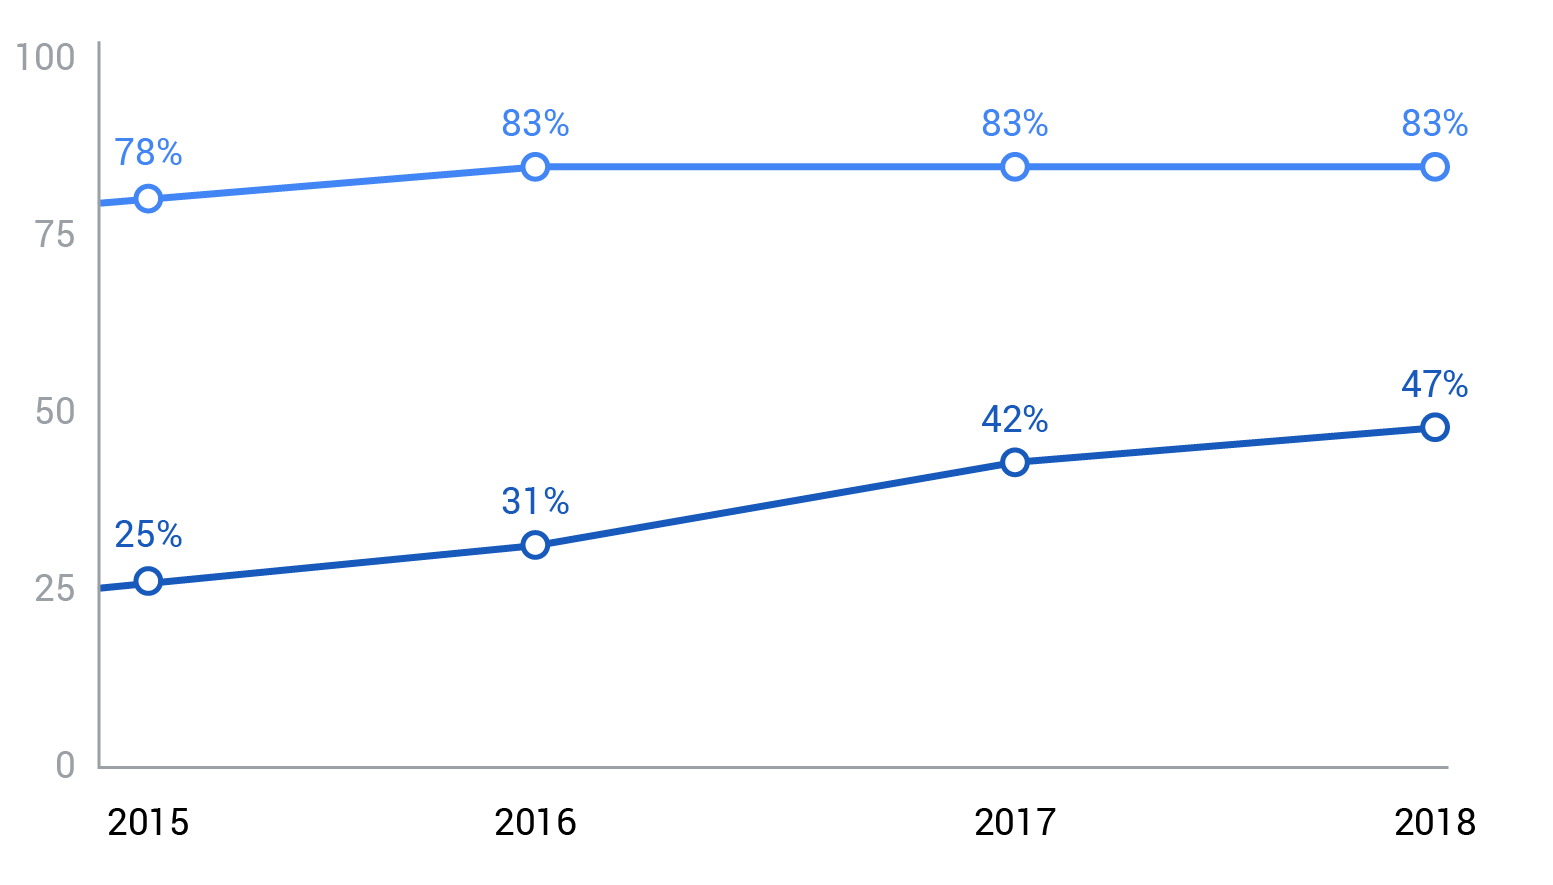 Số liệu của Google APAC mới đây cho thấy video trực tuyến tiếp cận được khoảng 47% người xem trong khi tivi vẫn được 83%.